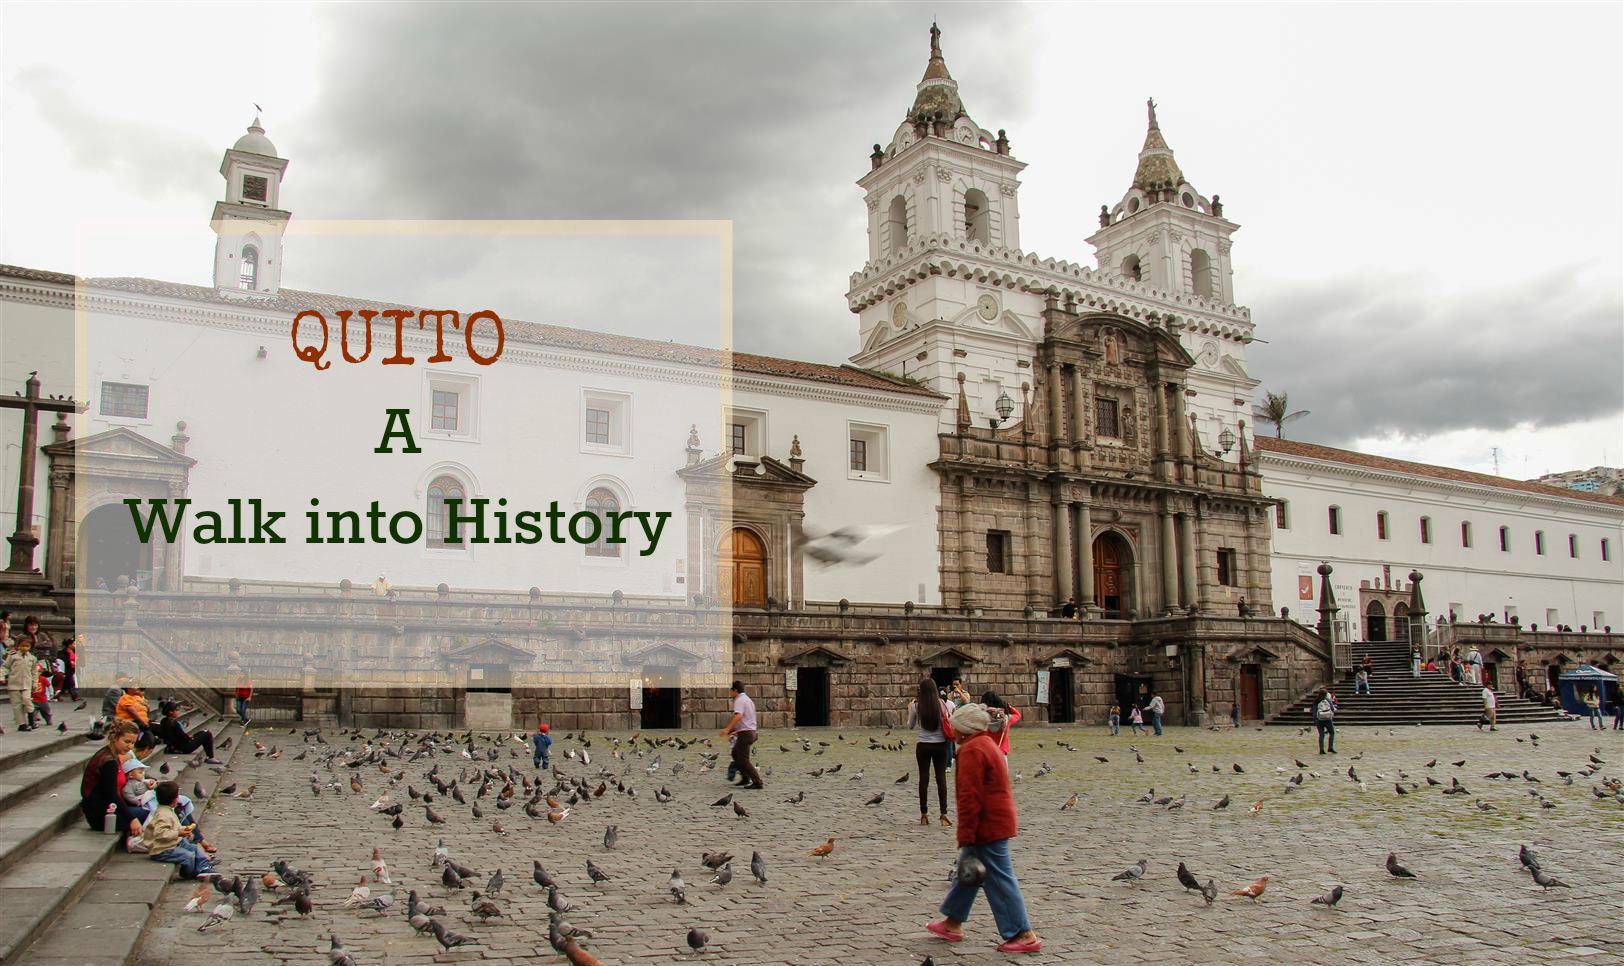 Quito – A Walk into History